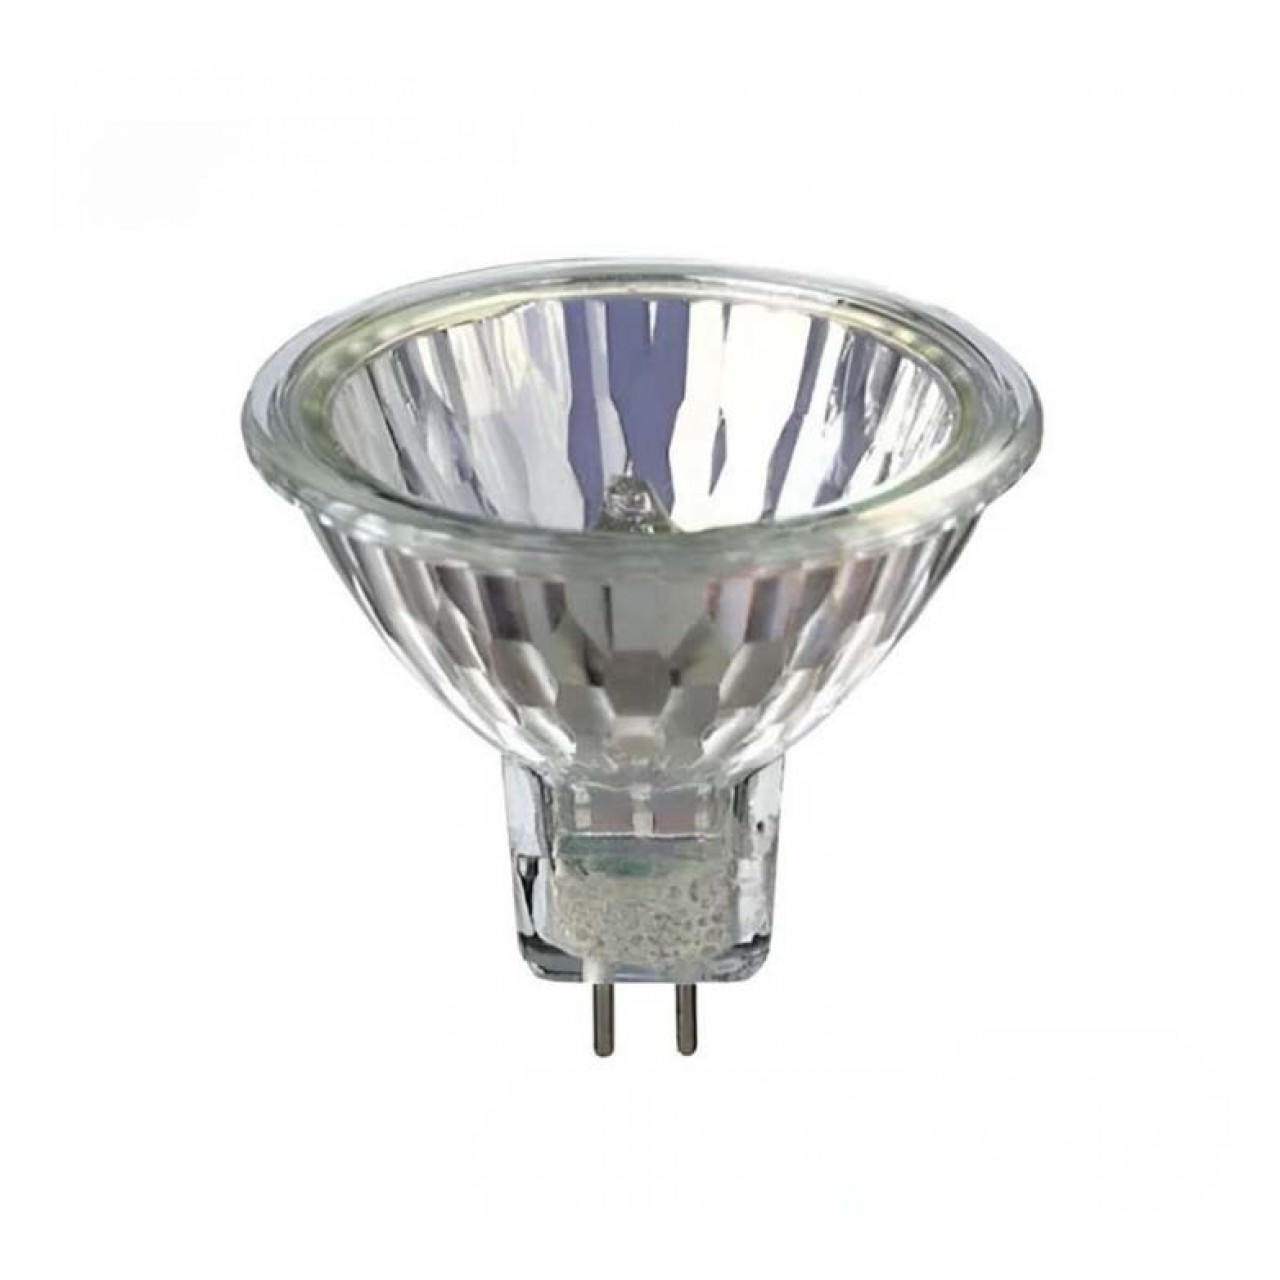 Lamp Iodine ECO MR16 18W/230V